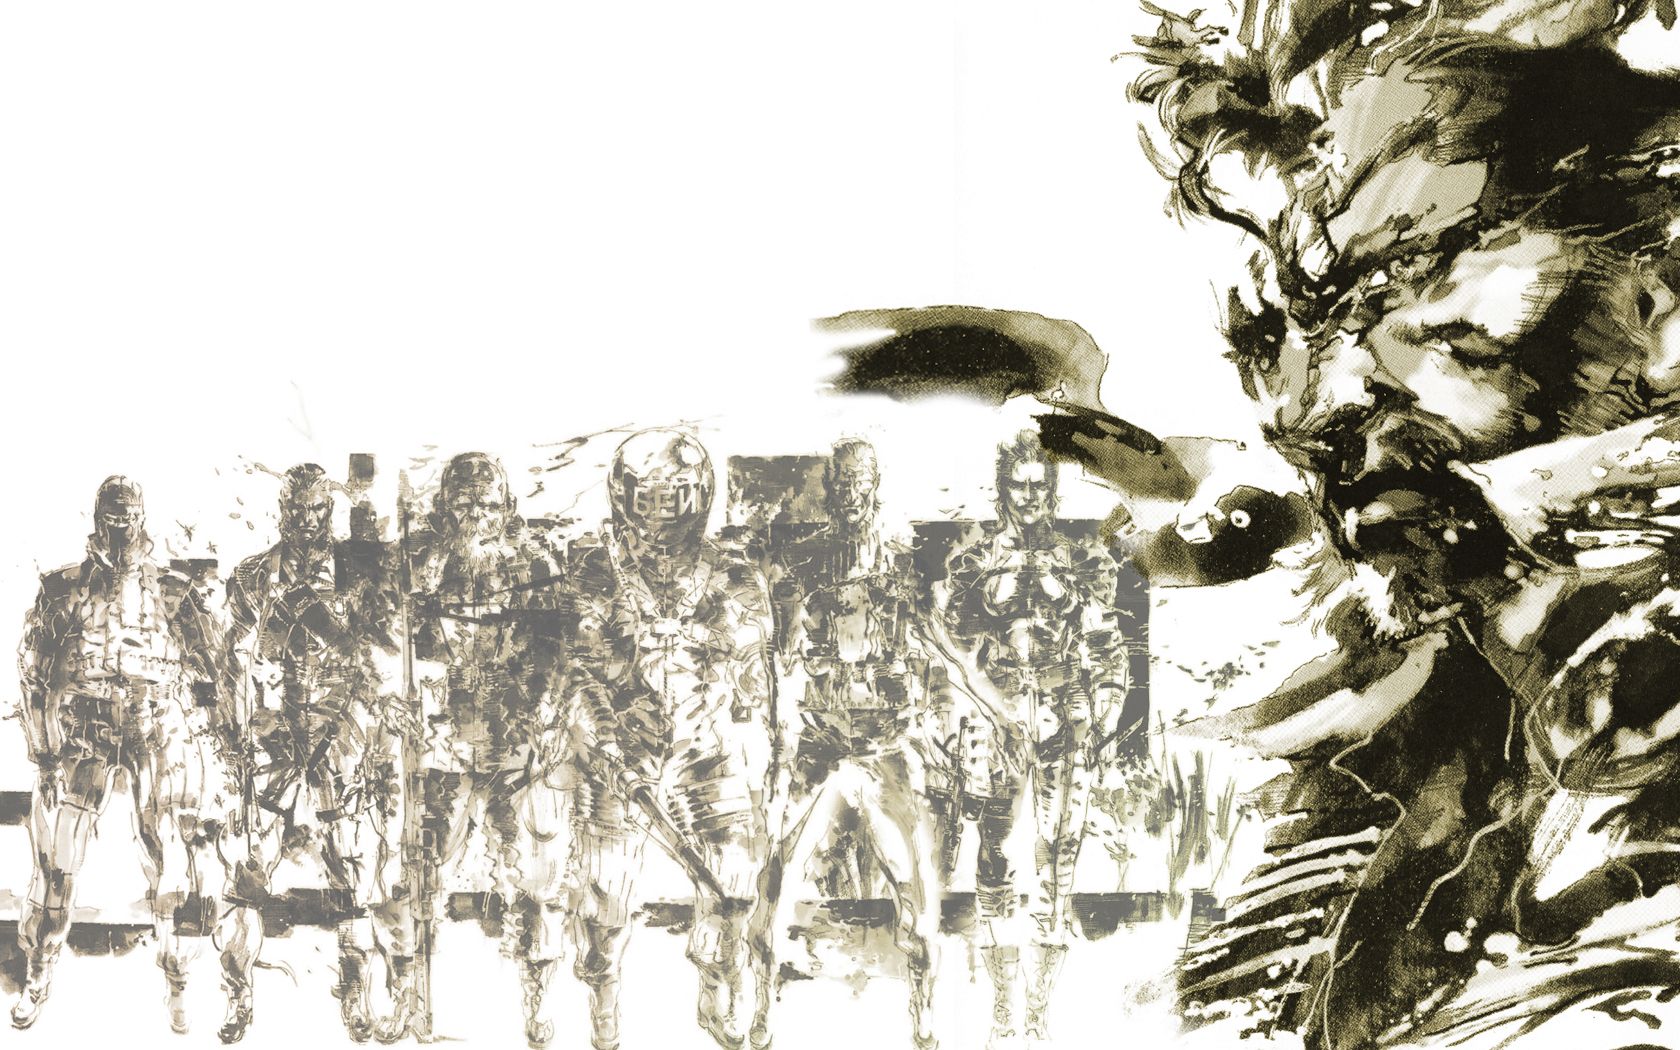 Metal Gear Solid Wallpaper | 1680x1050 | ID:16805